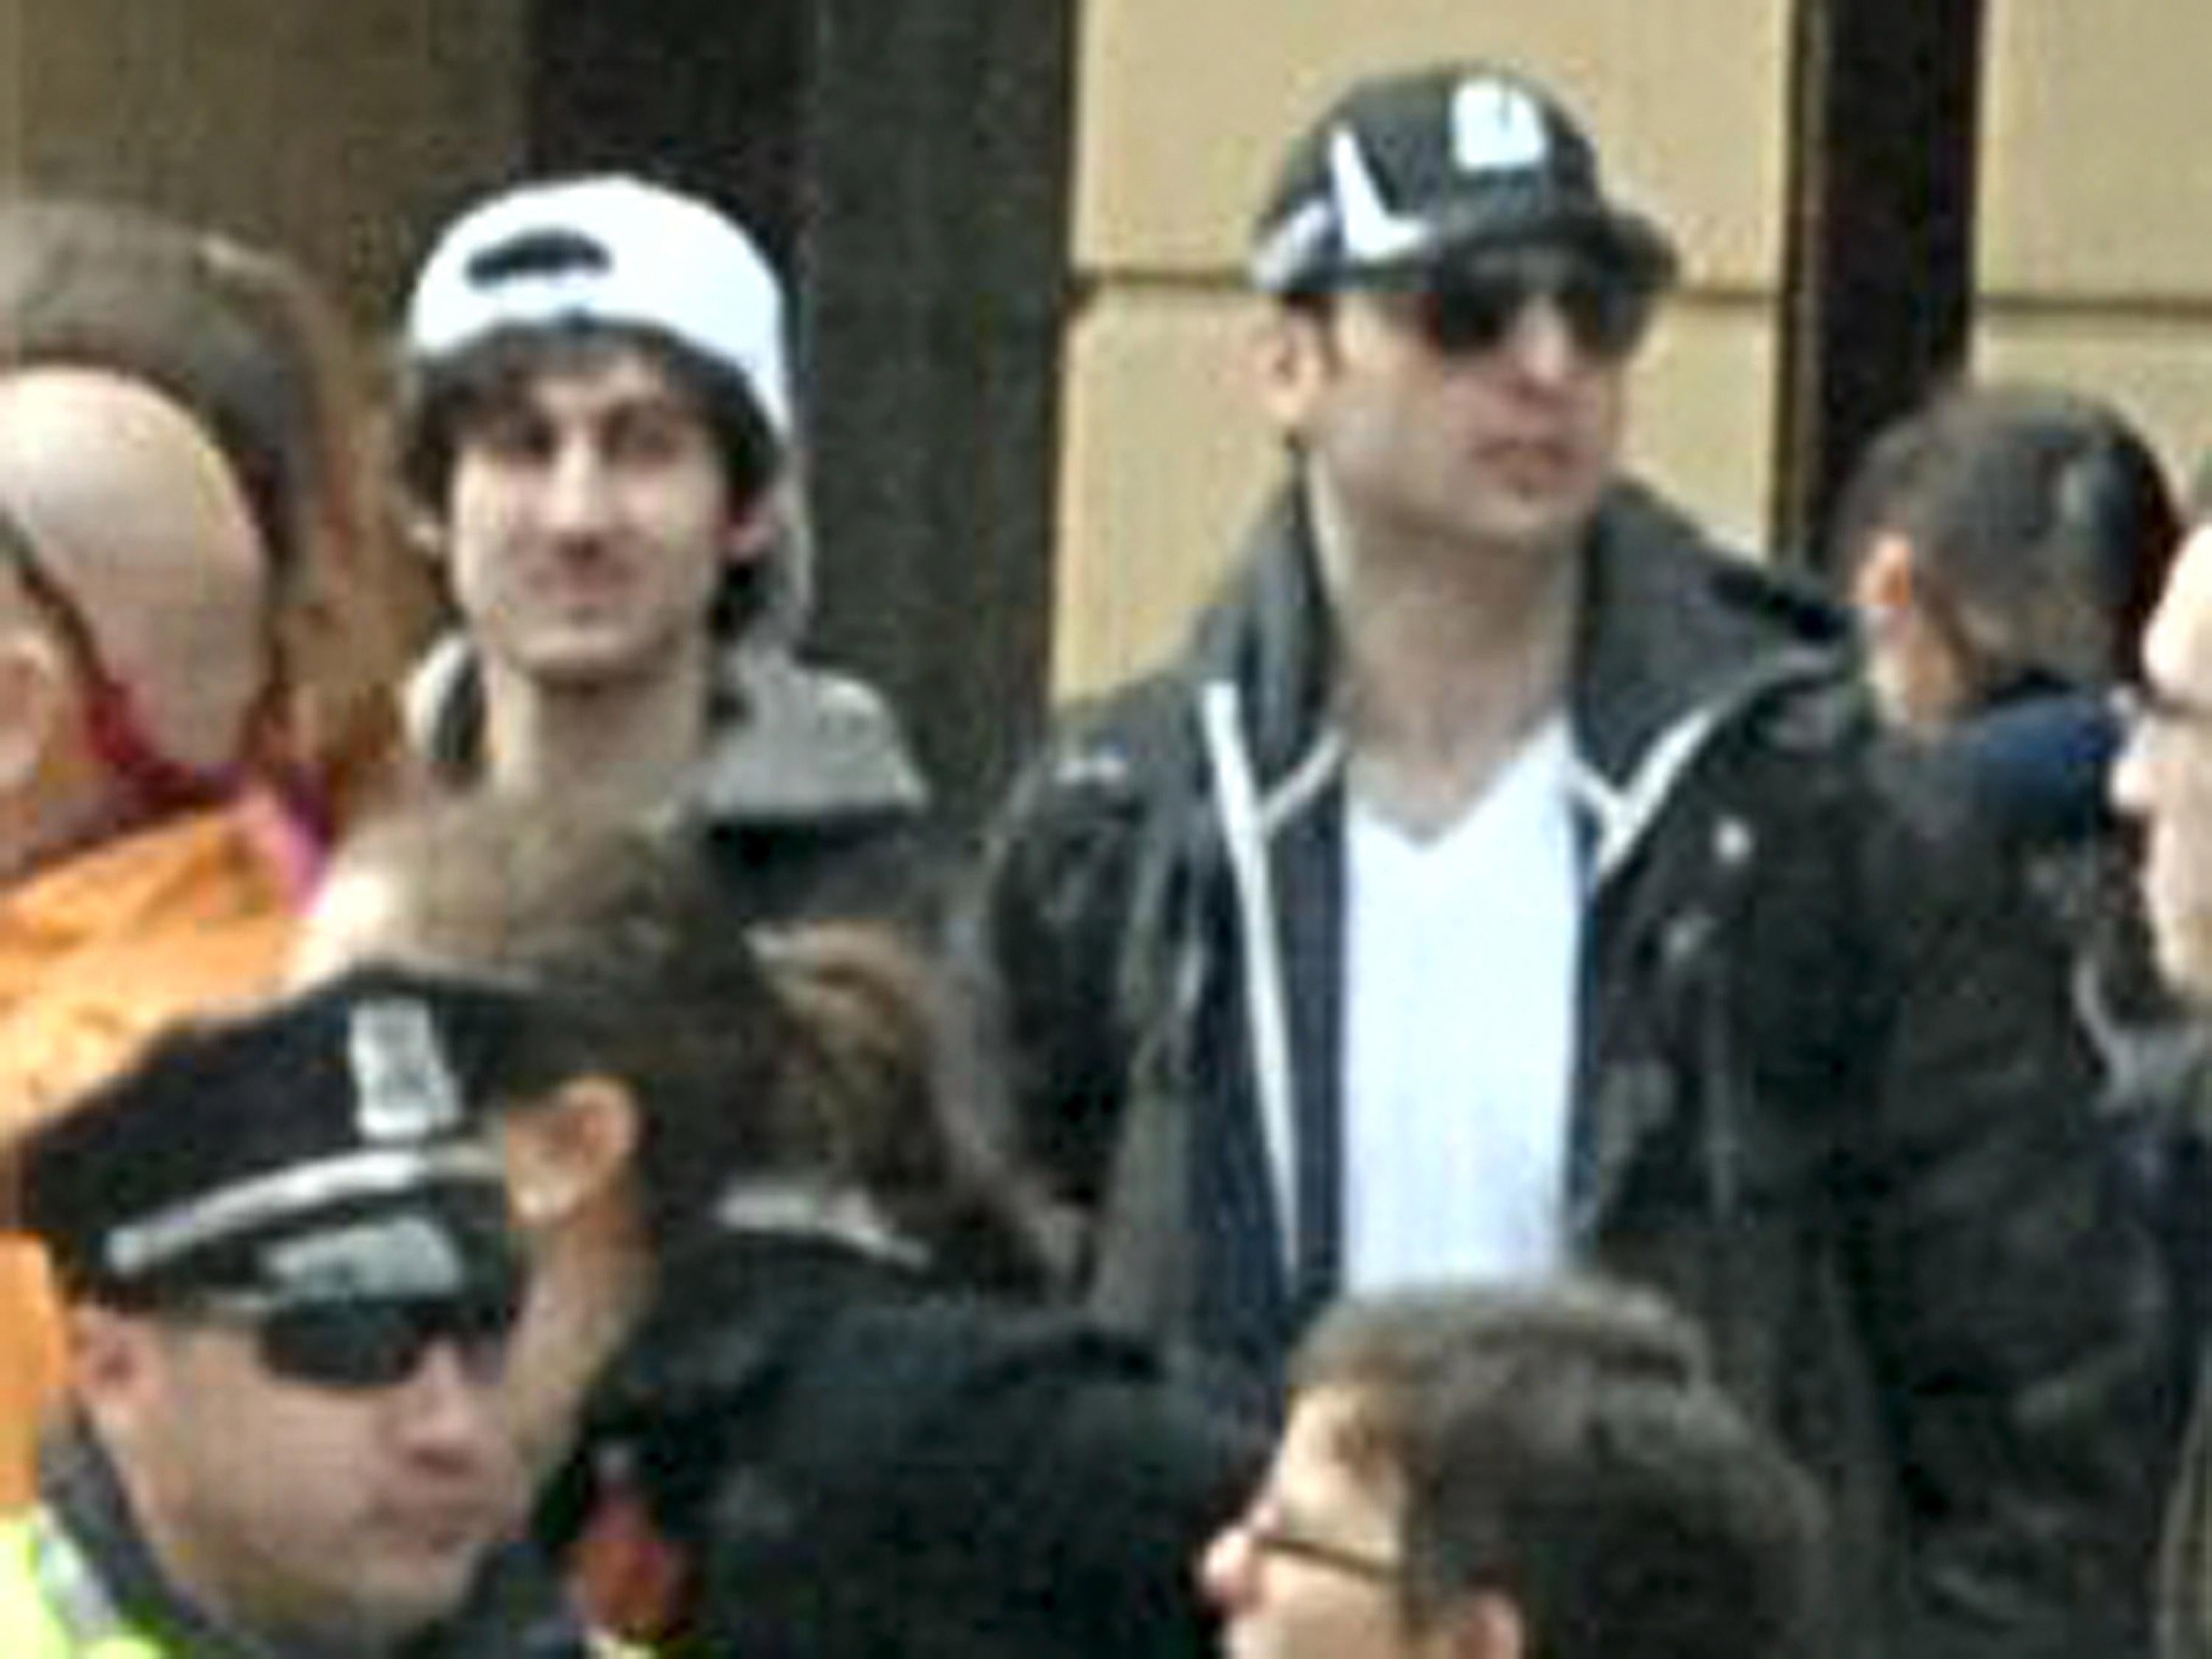 Tamerlan Tsarnaev and Dzhokhar Tsarnaev